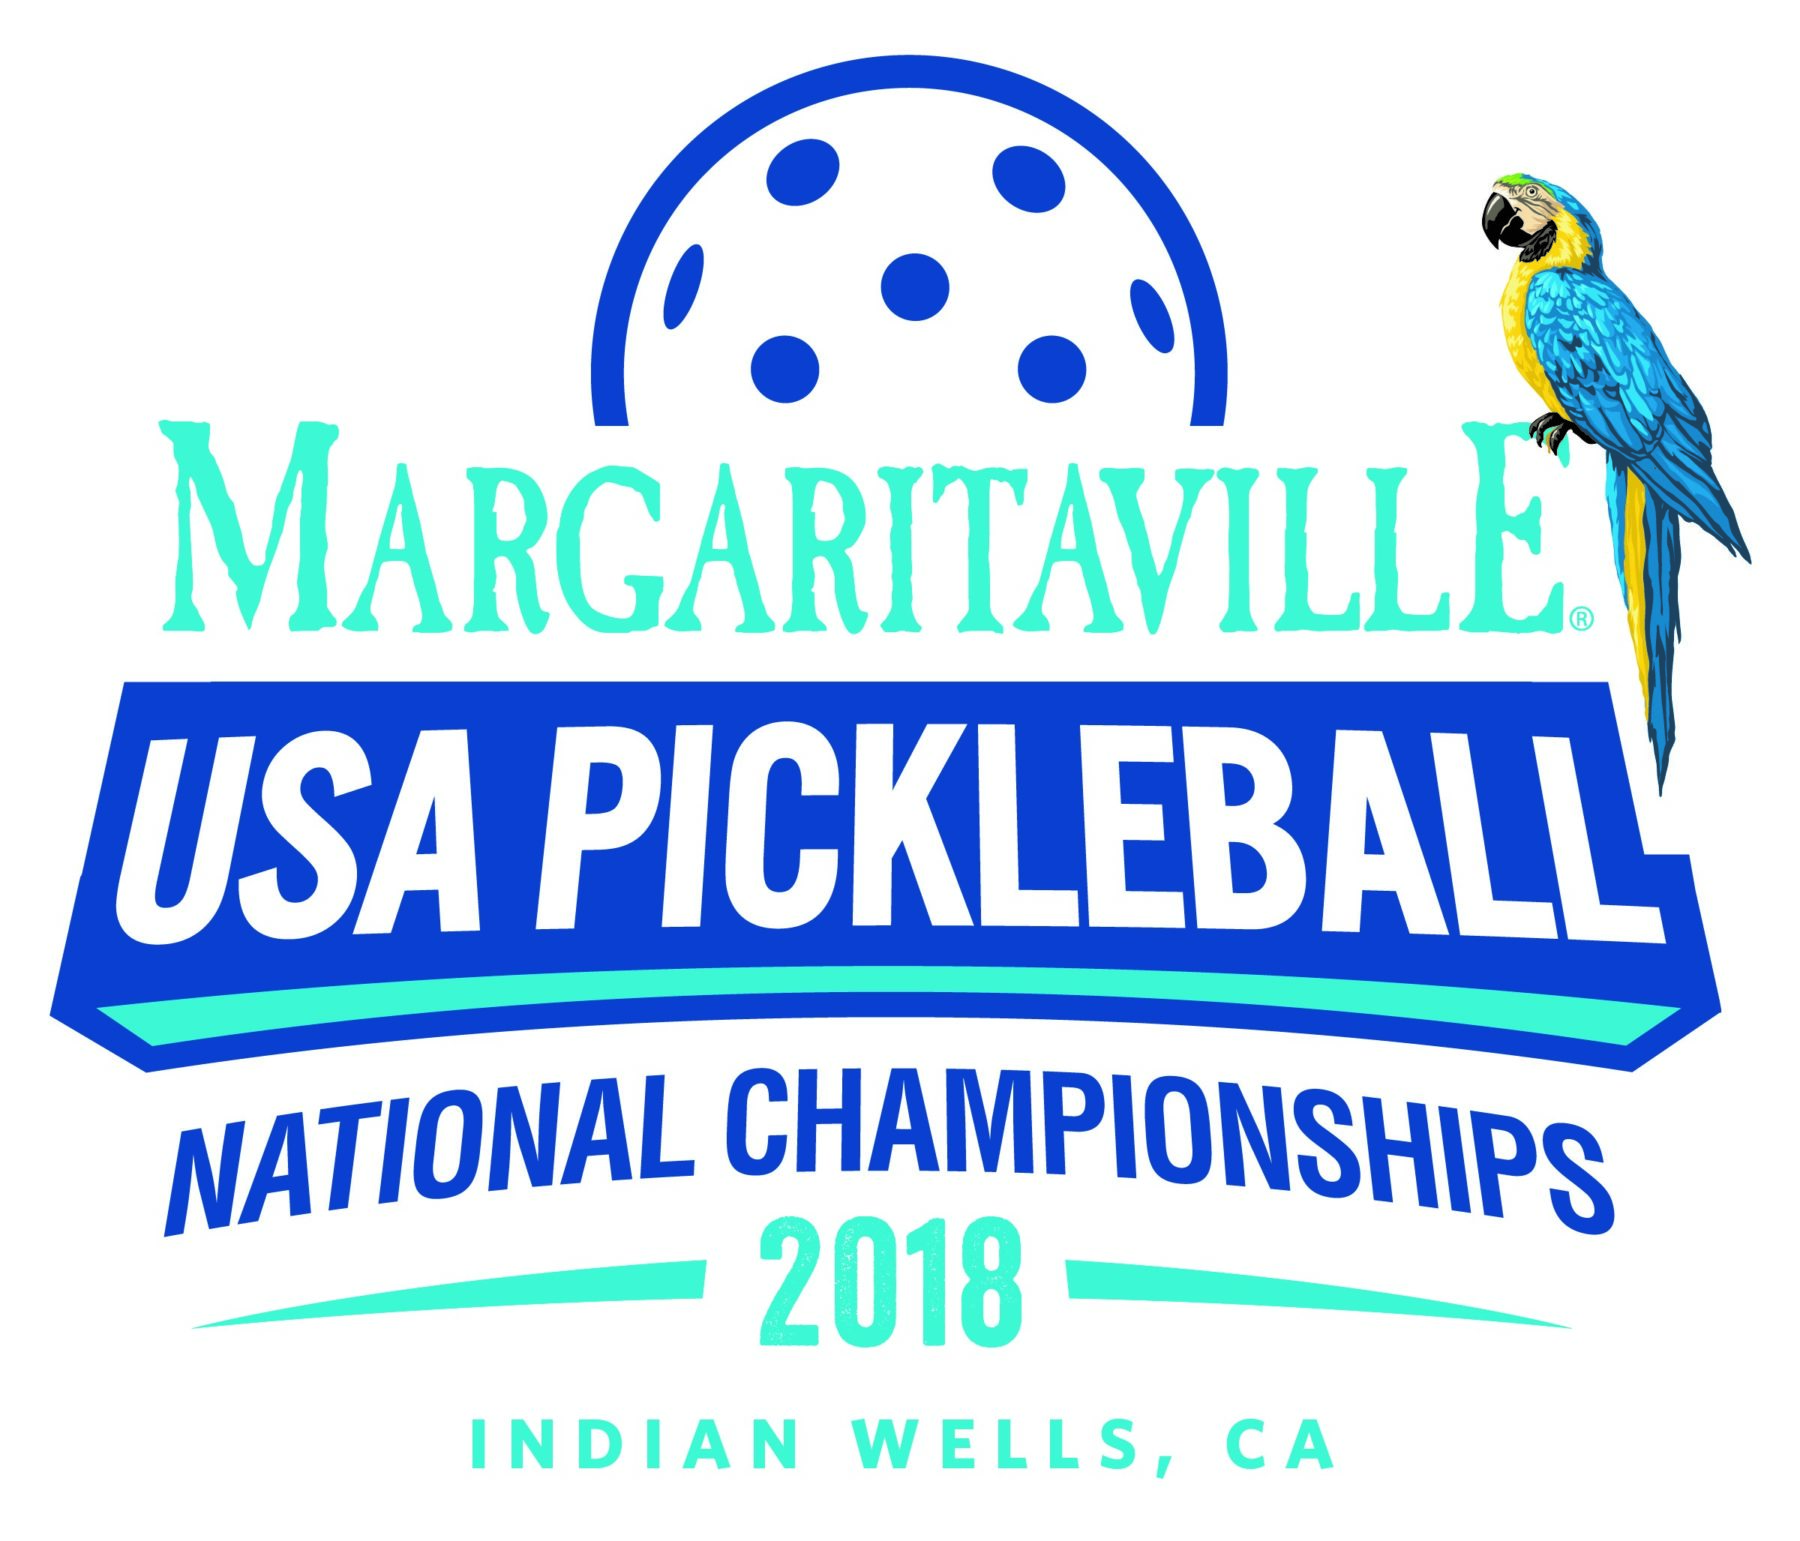 ESPN3 transmitirá en vivo el Campeonato Nacional de Pickleball de Margaritaville USA 2018